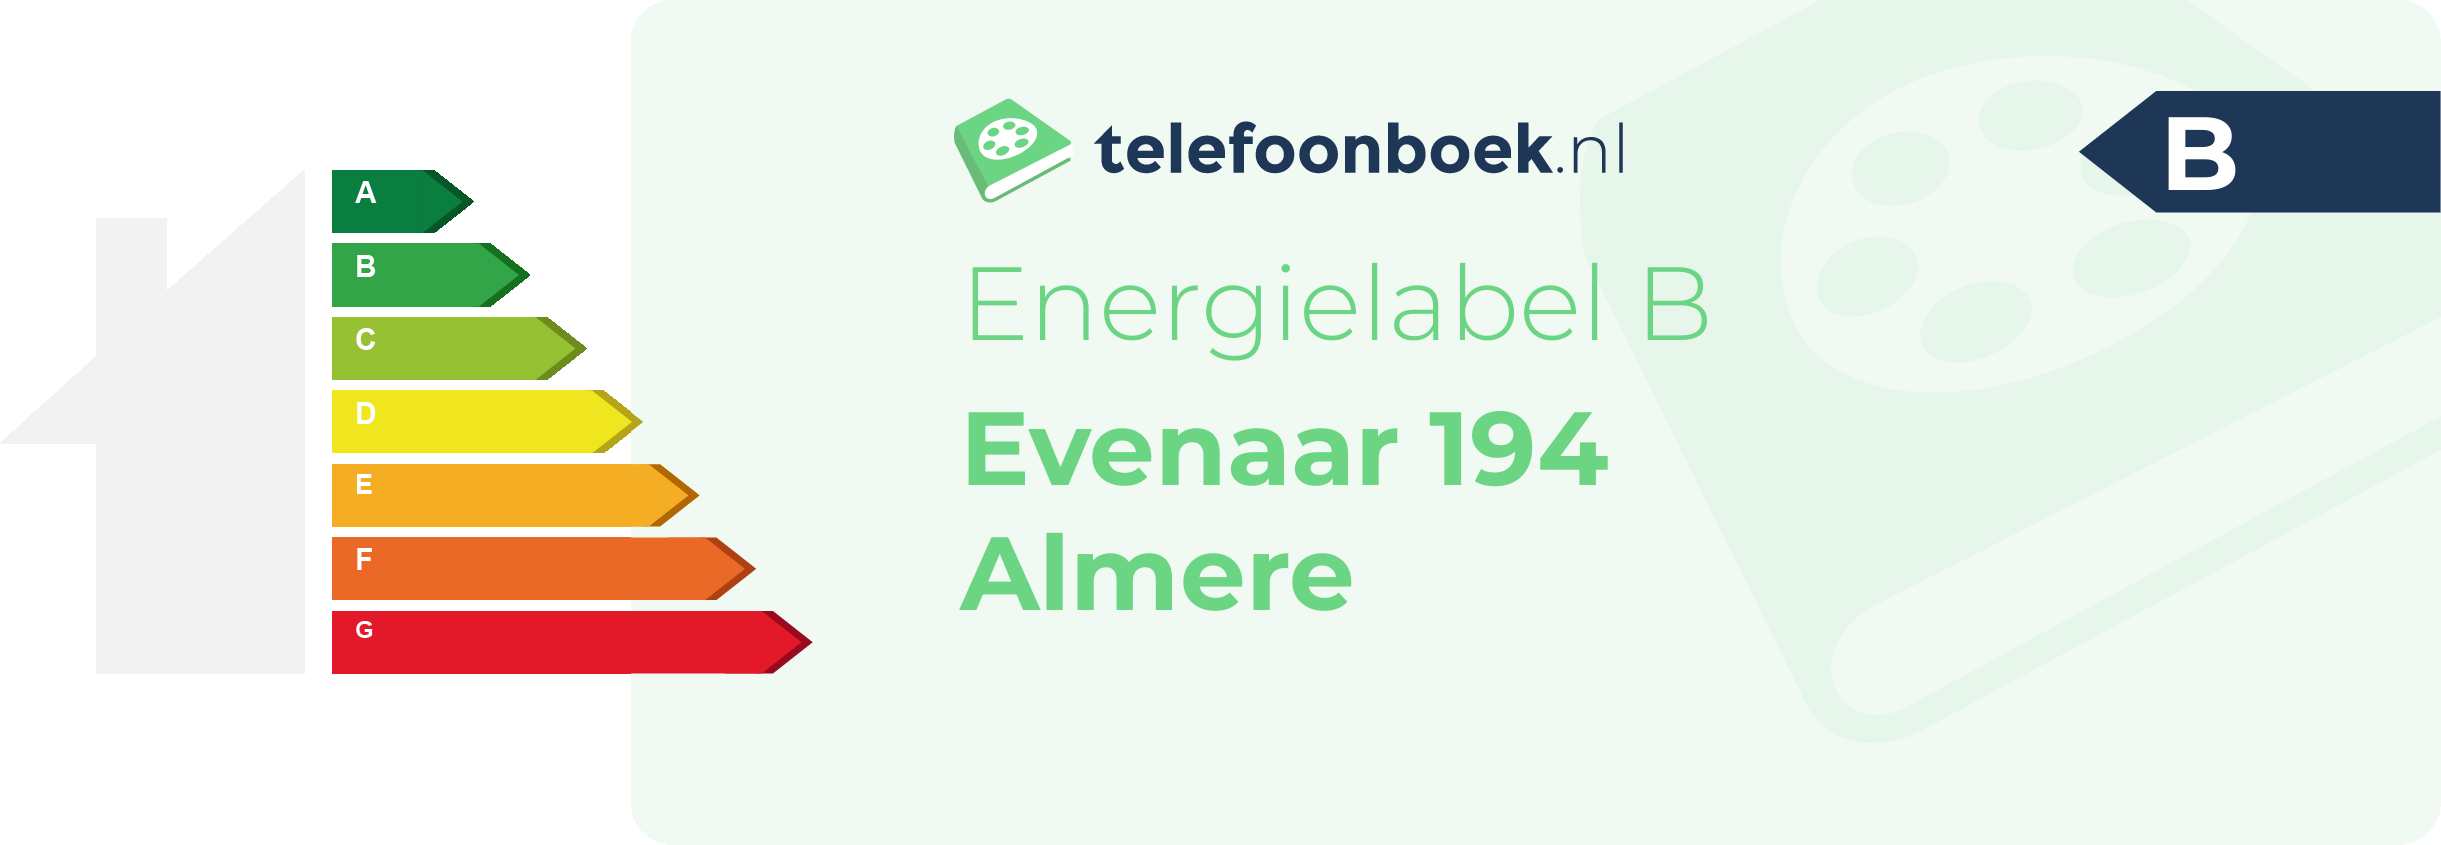 Energielabel Evenaar 194 Almere